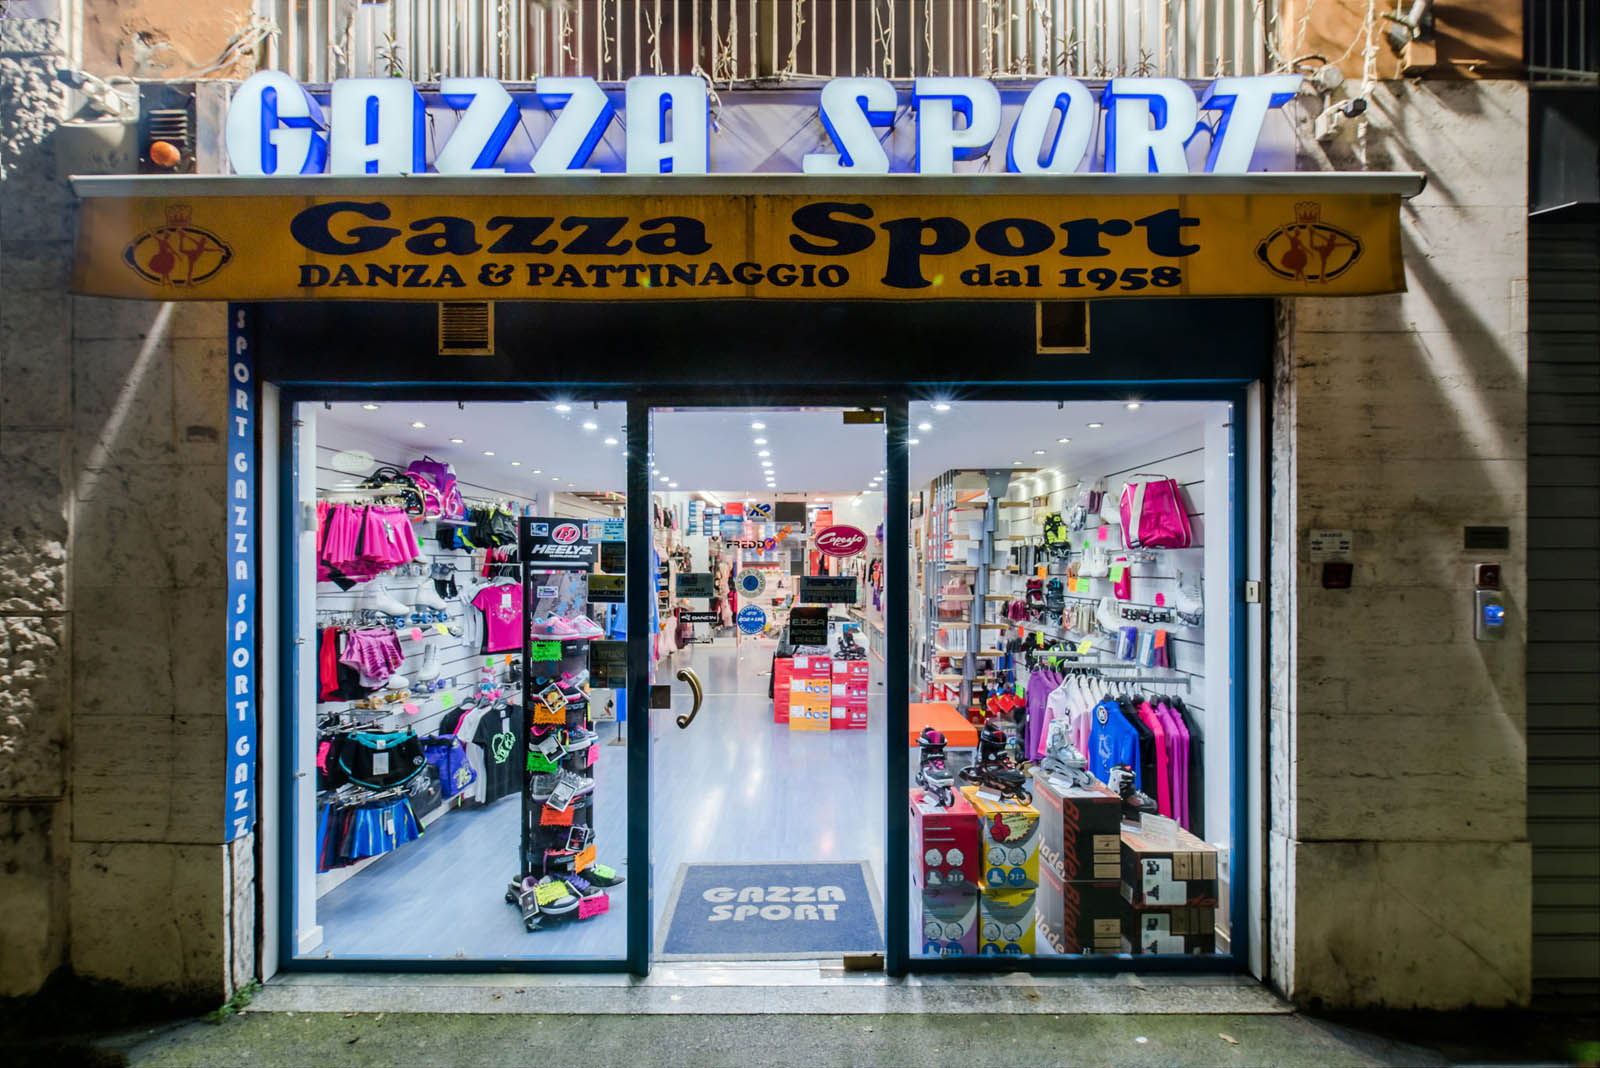 GAZZA SPORT negozio articoli sportivi pattinaggio e danza